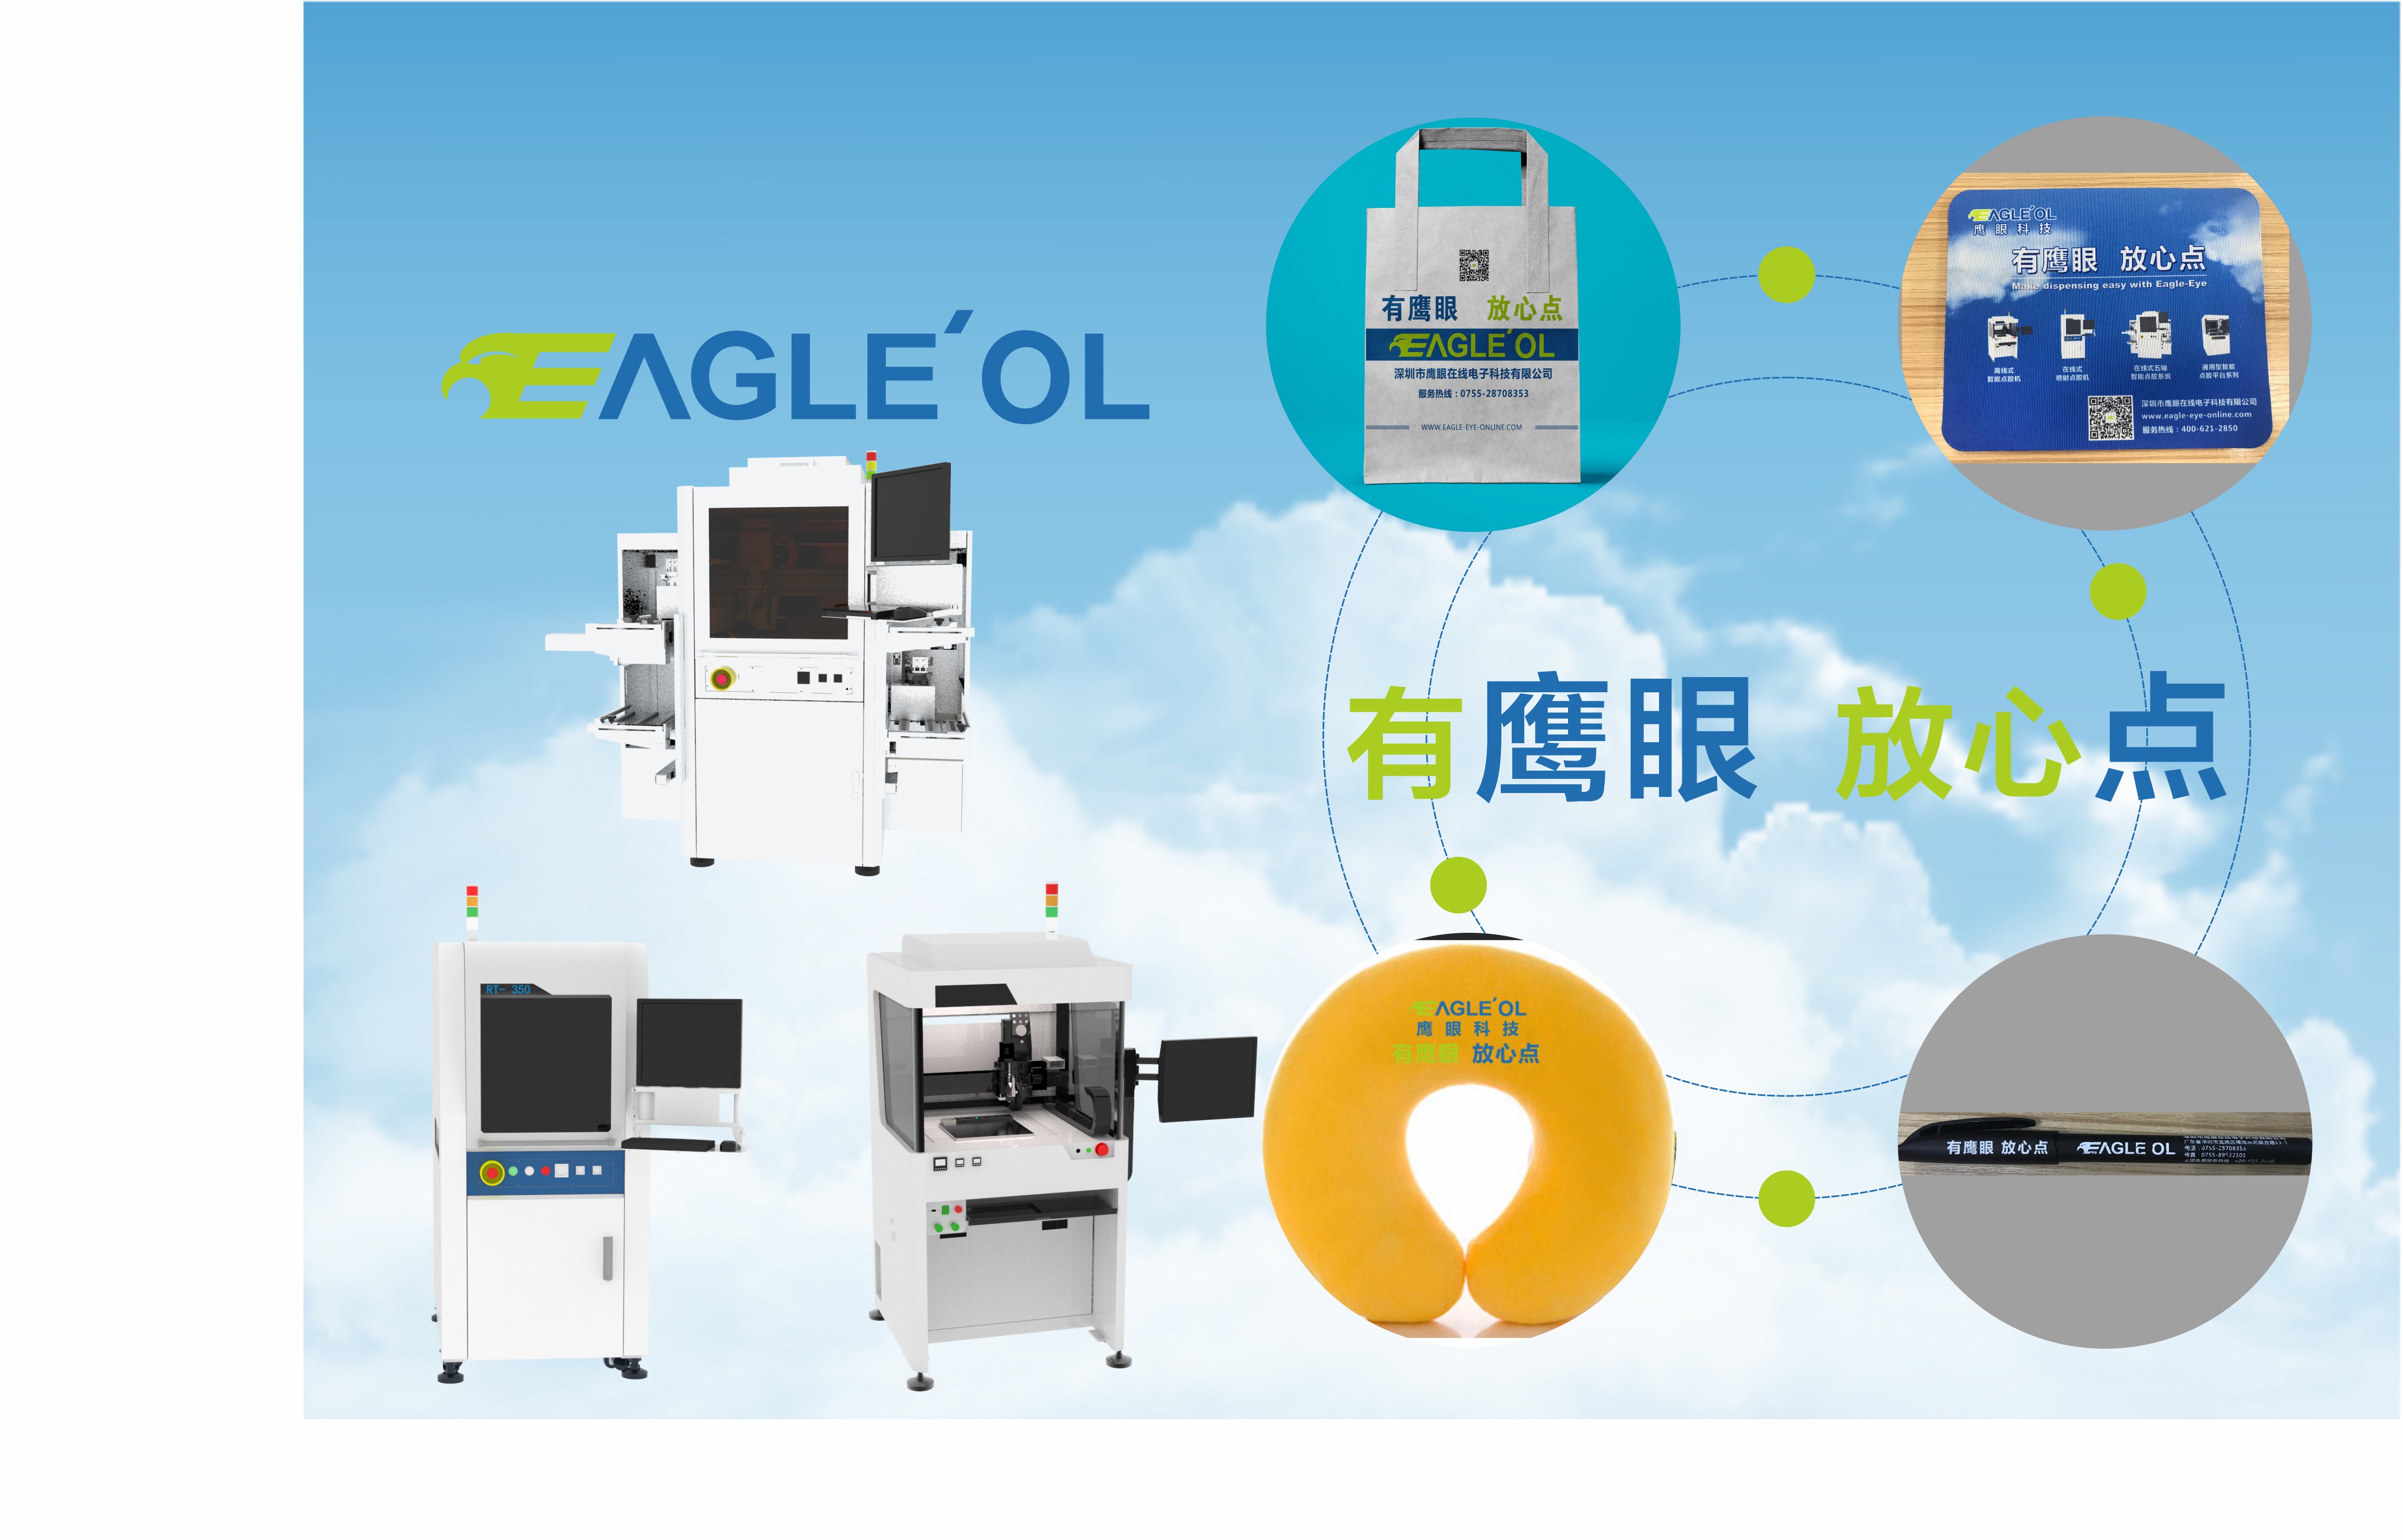 鹰眼科技邀您共赴2019中国电子制造自动化&资源展